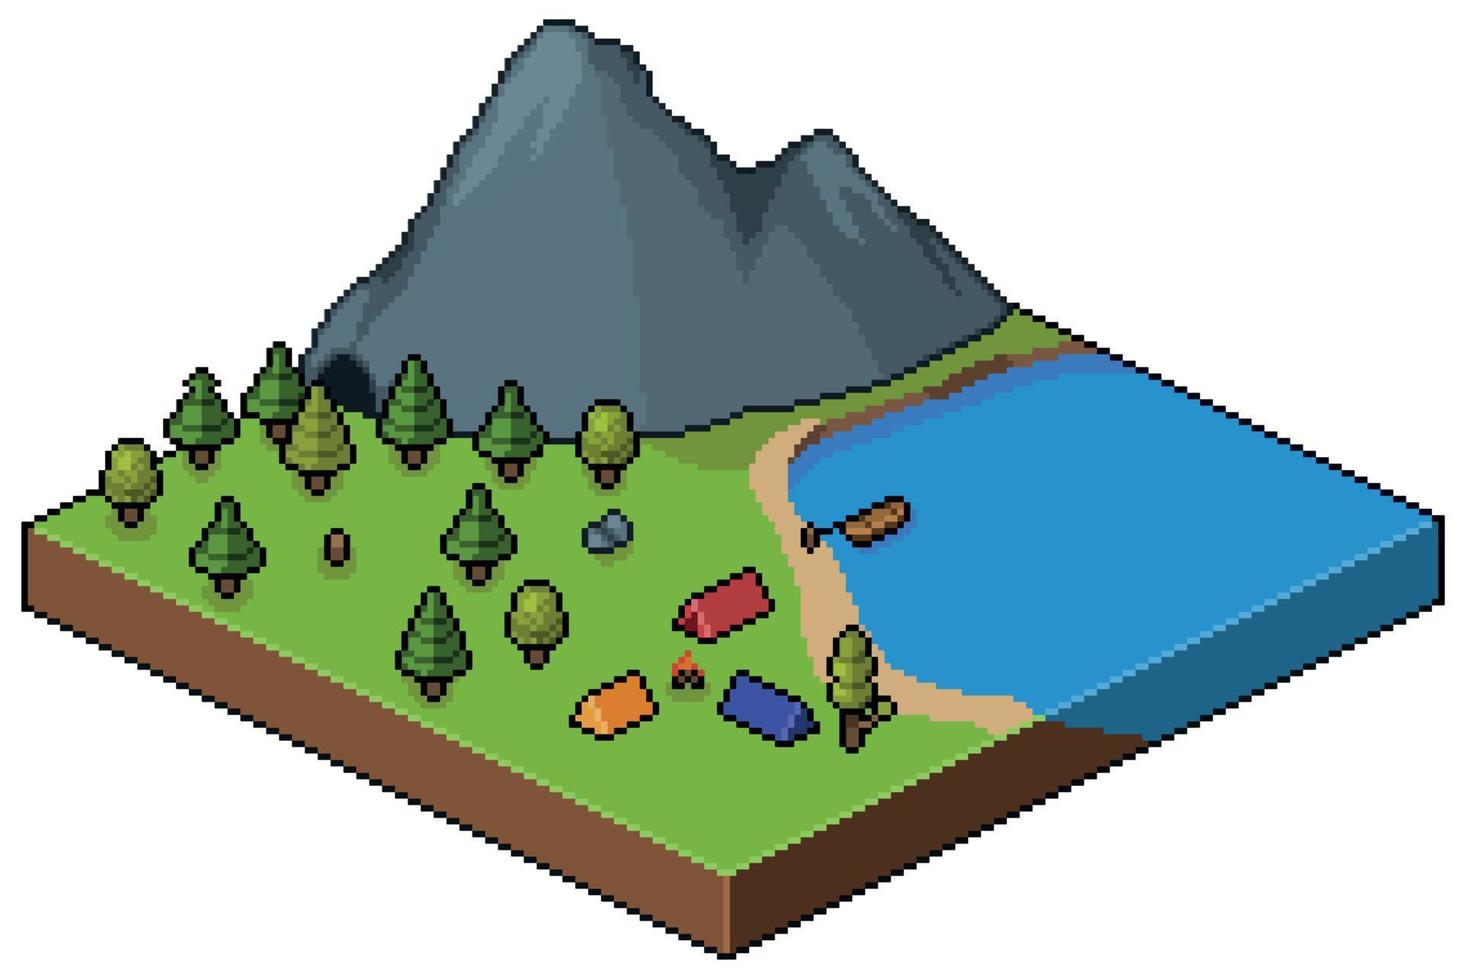 campeggio isometrico pixel art nella foresta con montagna e lago 8 bit vettore